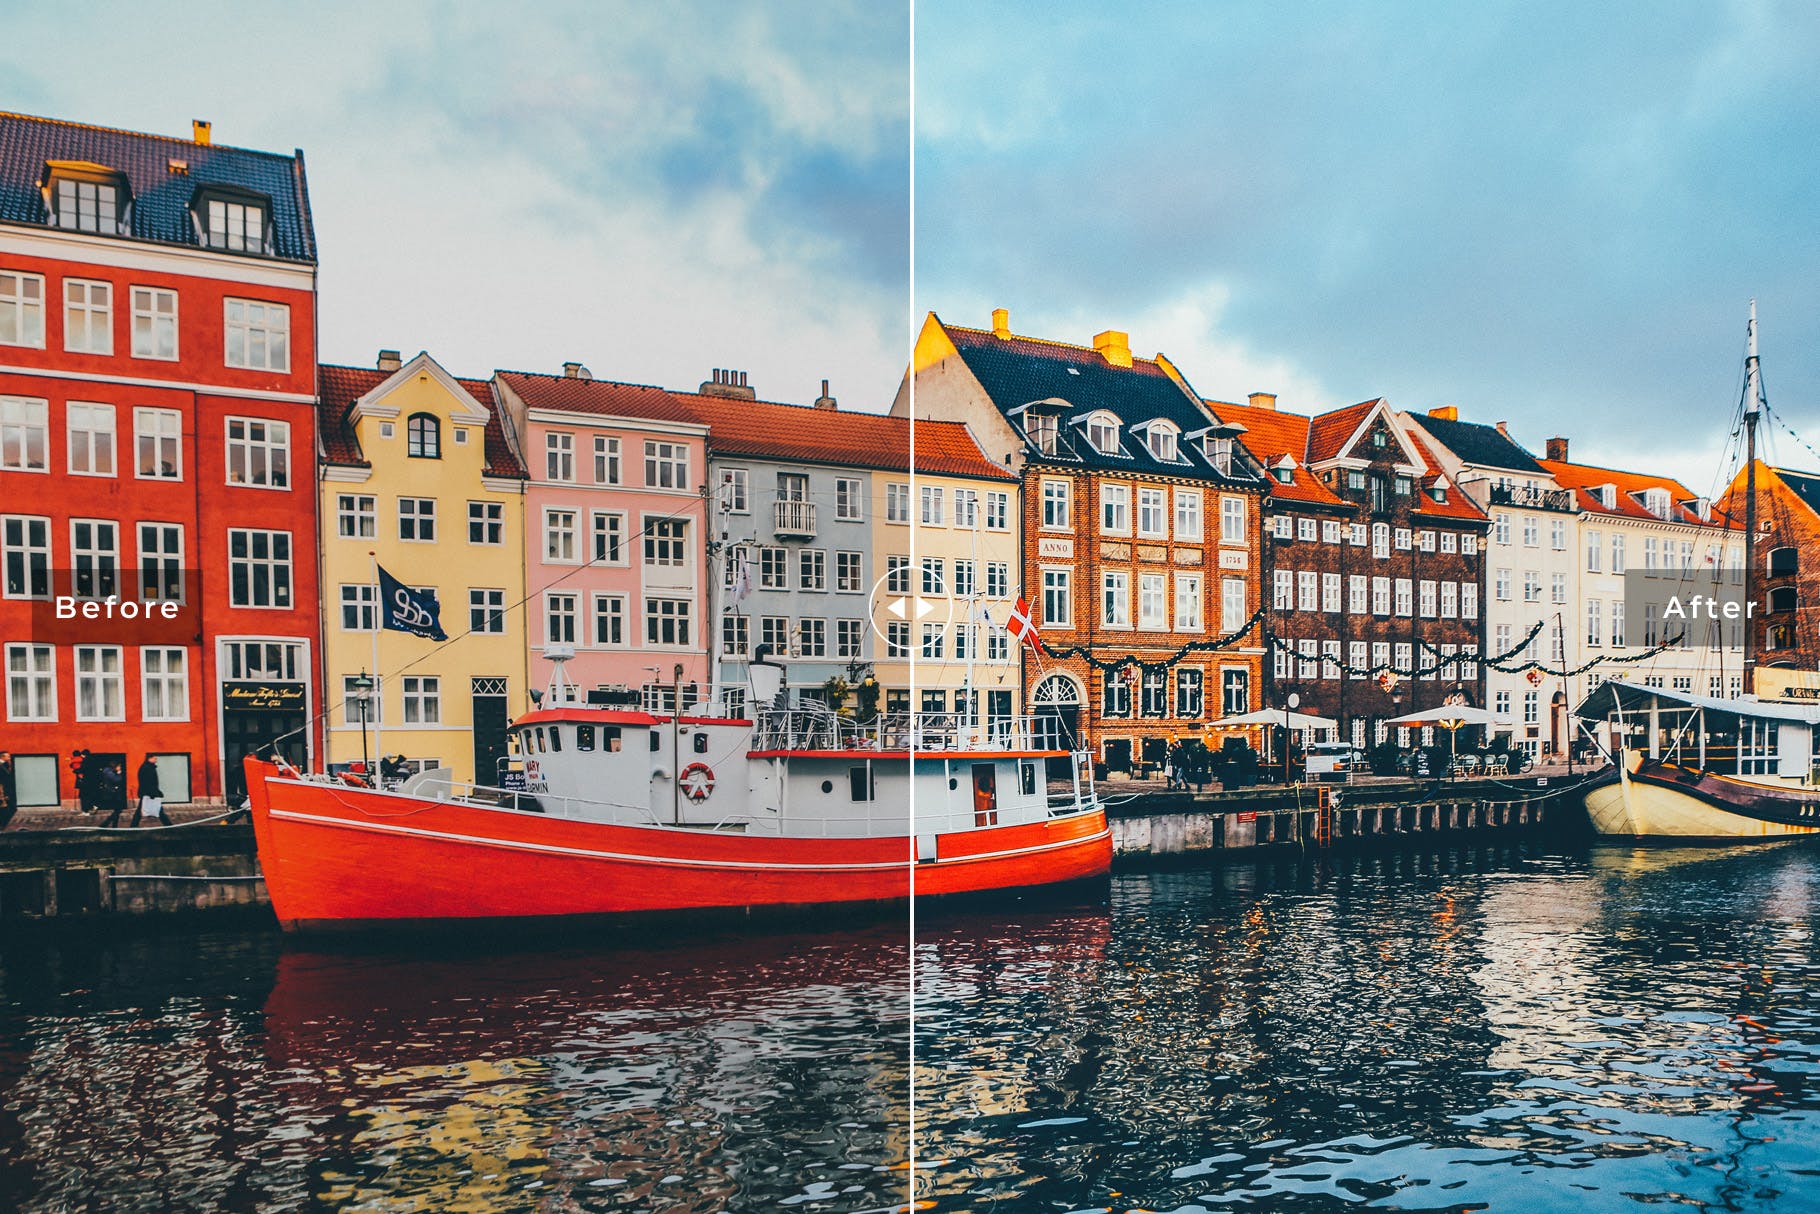 人物风景摄影亮色暖色调处理第一素材精选LR预设下载 Copenhagen Mobile & Desktop Lightroom Presets插图(4)